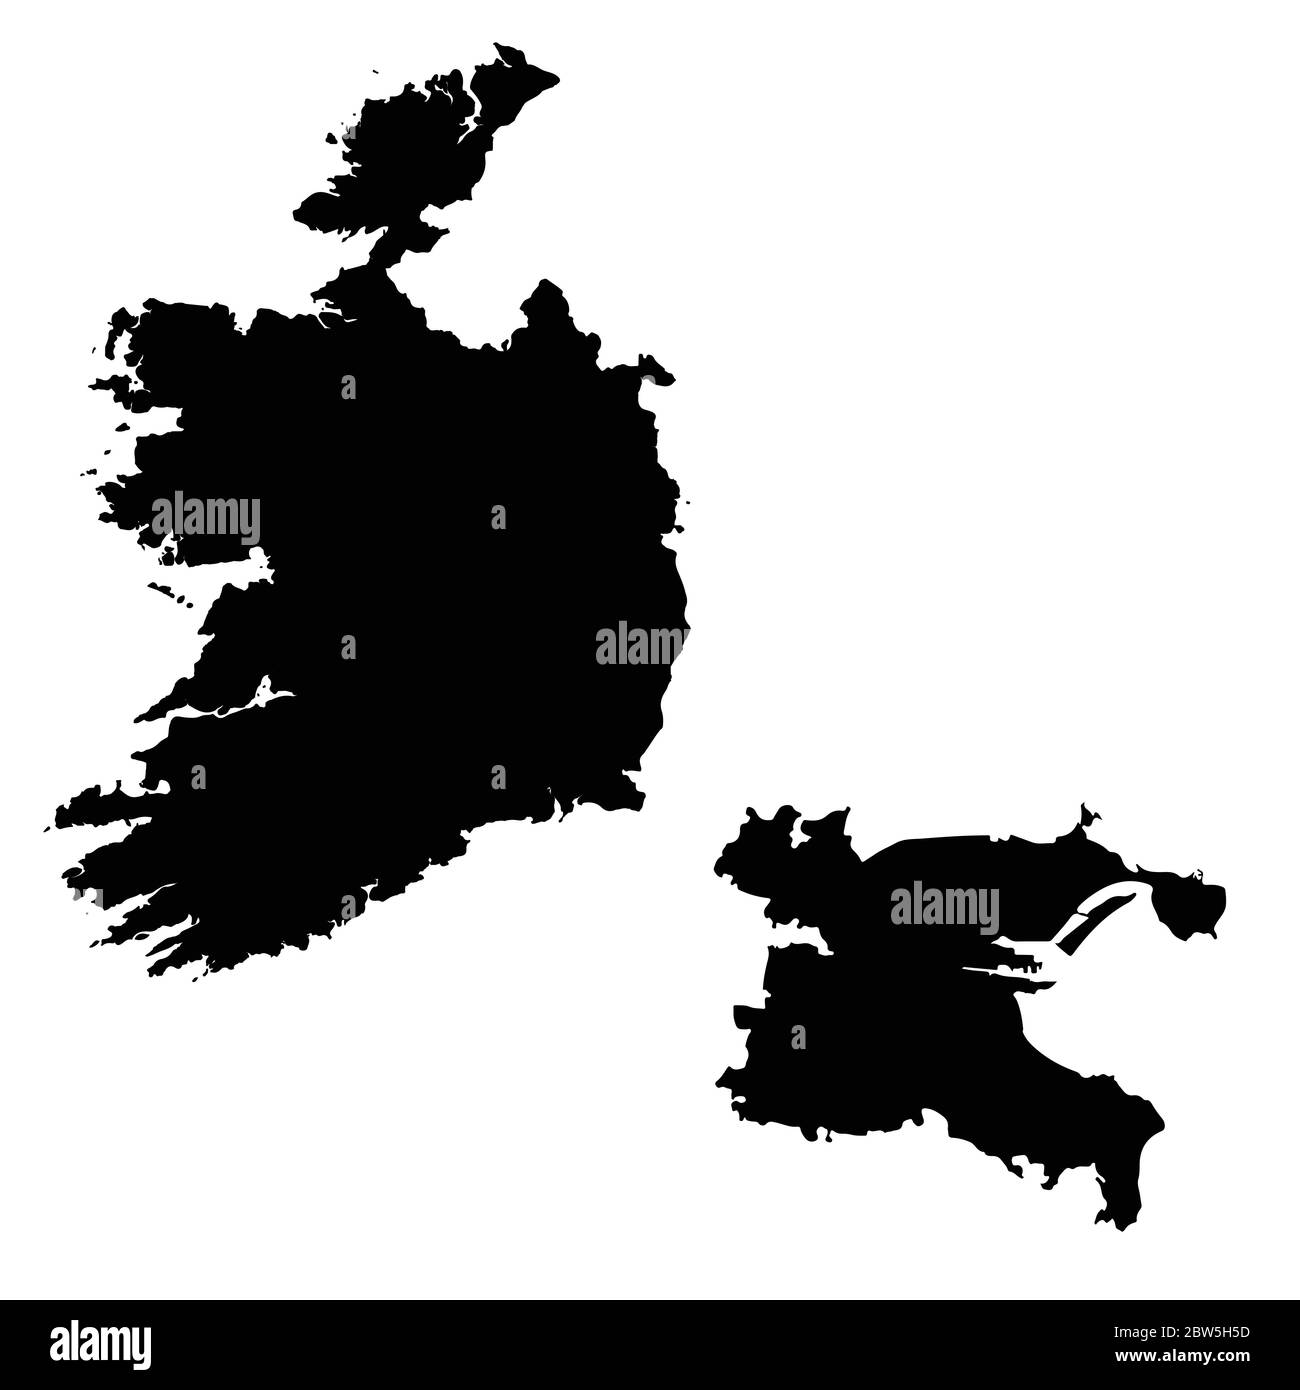 Vektorkarte Irland und Dublin. Land und Hauptstadt. Isolierte Vektorgrafik. Schwarz auf weißem Hintergrund. EPS 10-Abbildung. Stock Vektor